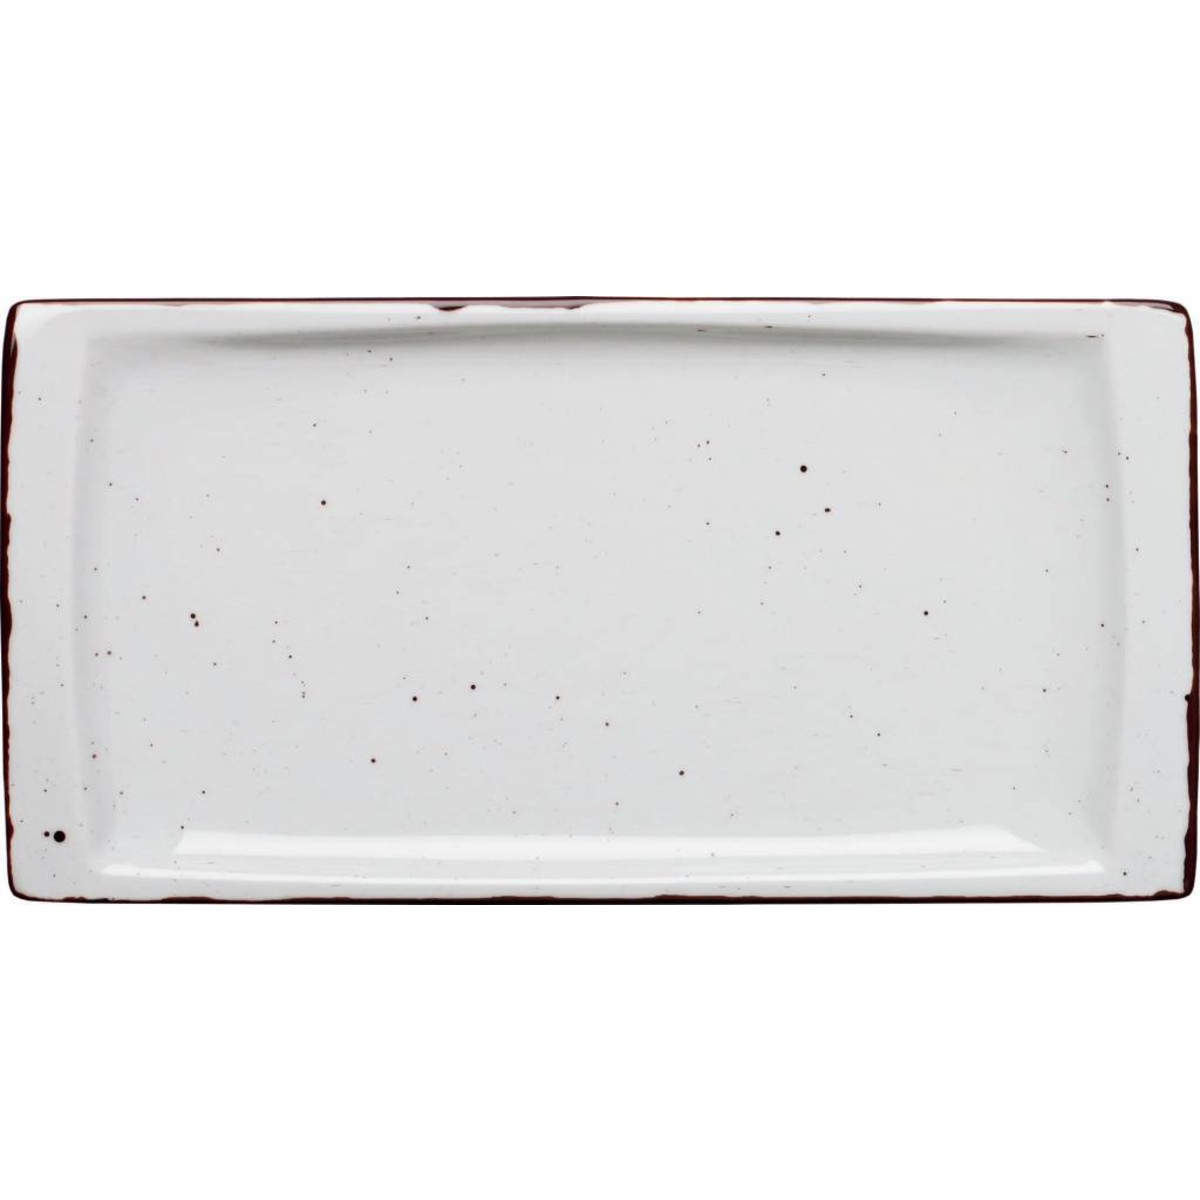 Porzellanserie "Granja" weiß Platte flach eckig, 18x36 cm